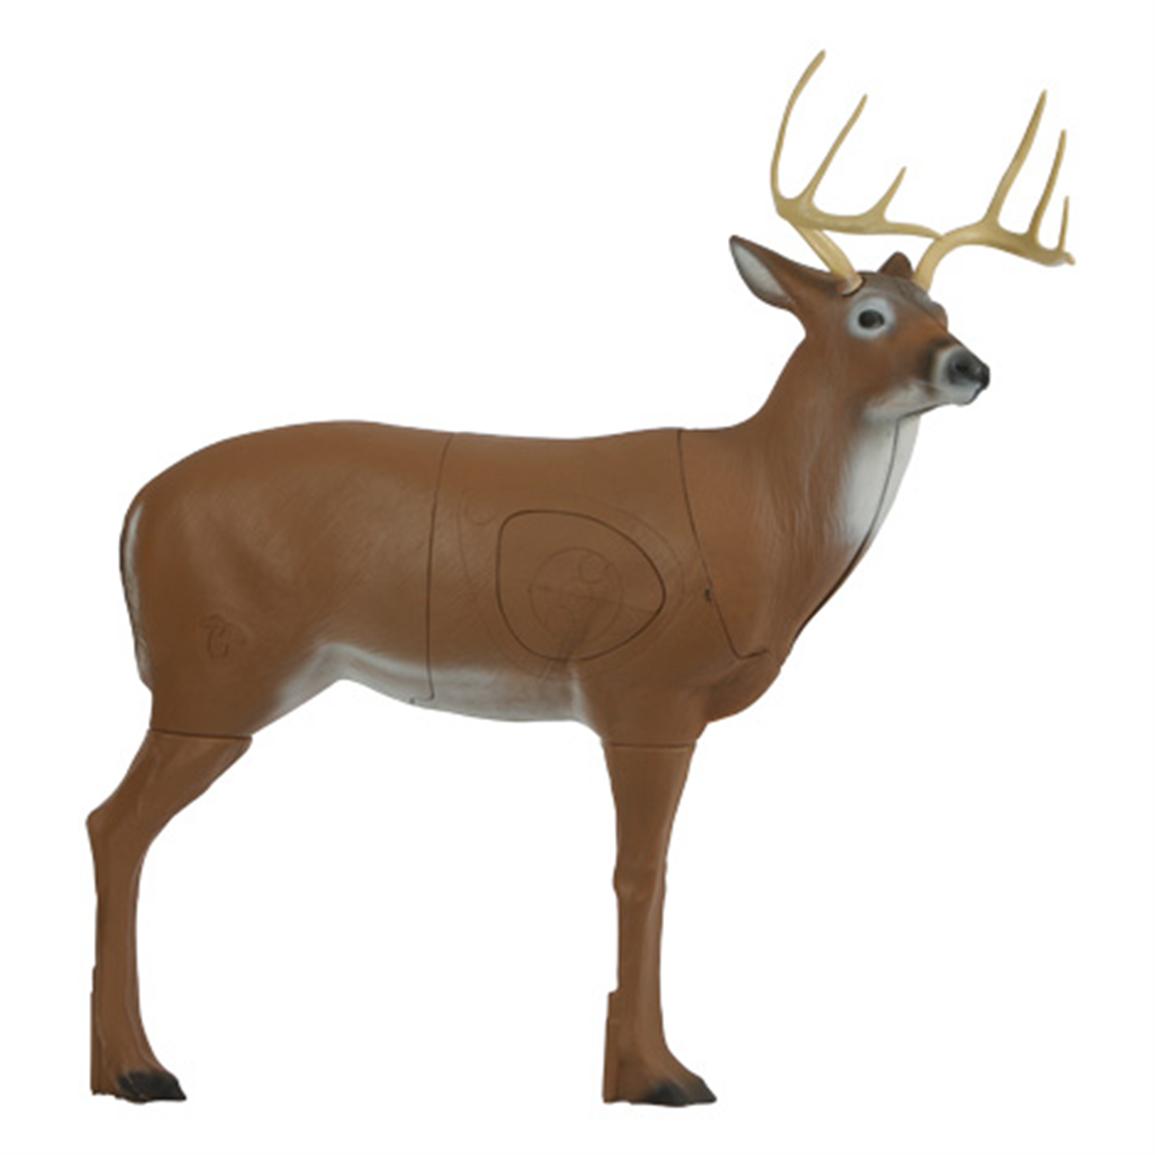 3d Deer Archery Target | 3d Cake Image